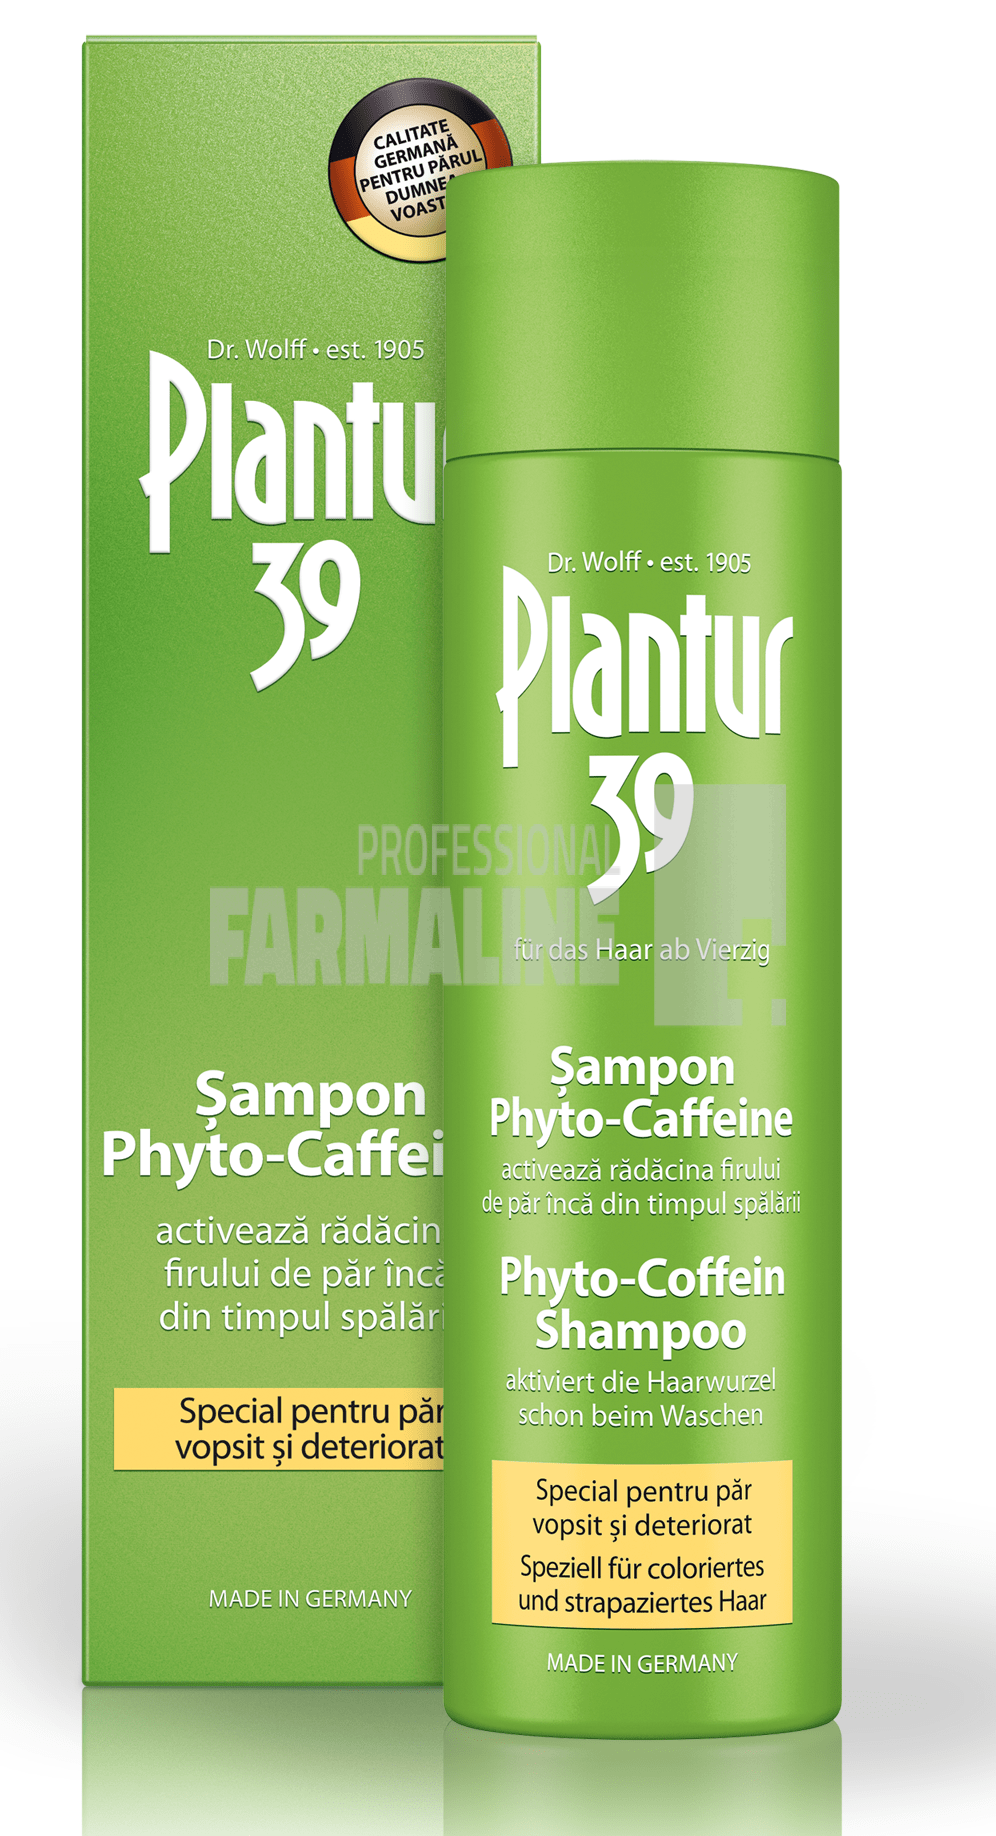 Plantur 39 Phito-Caffeine Sampon pentru par vopsit si deteriorat 250 ml